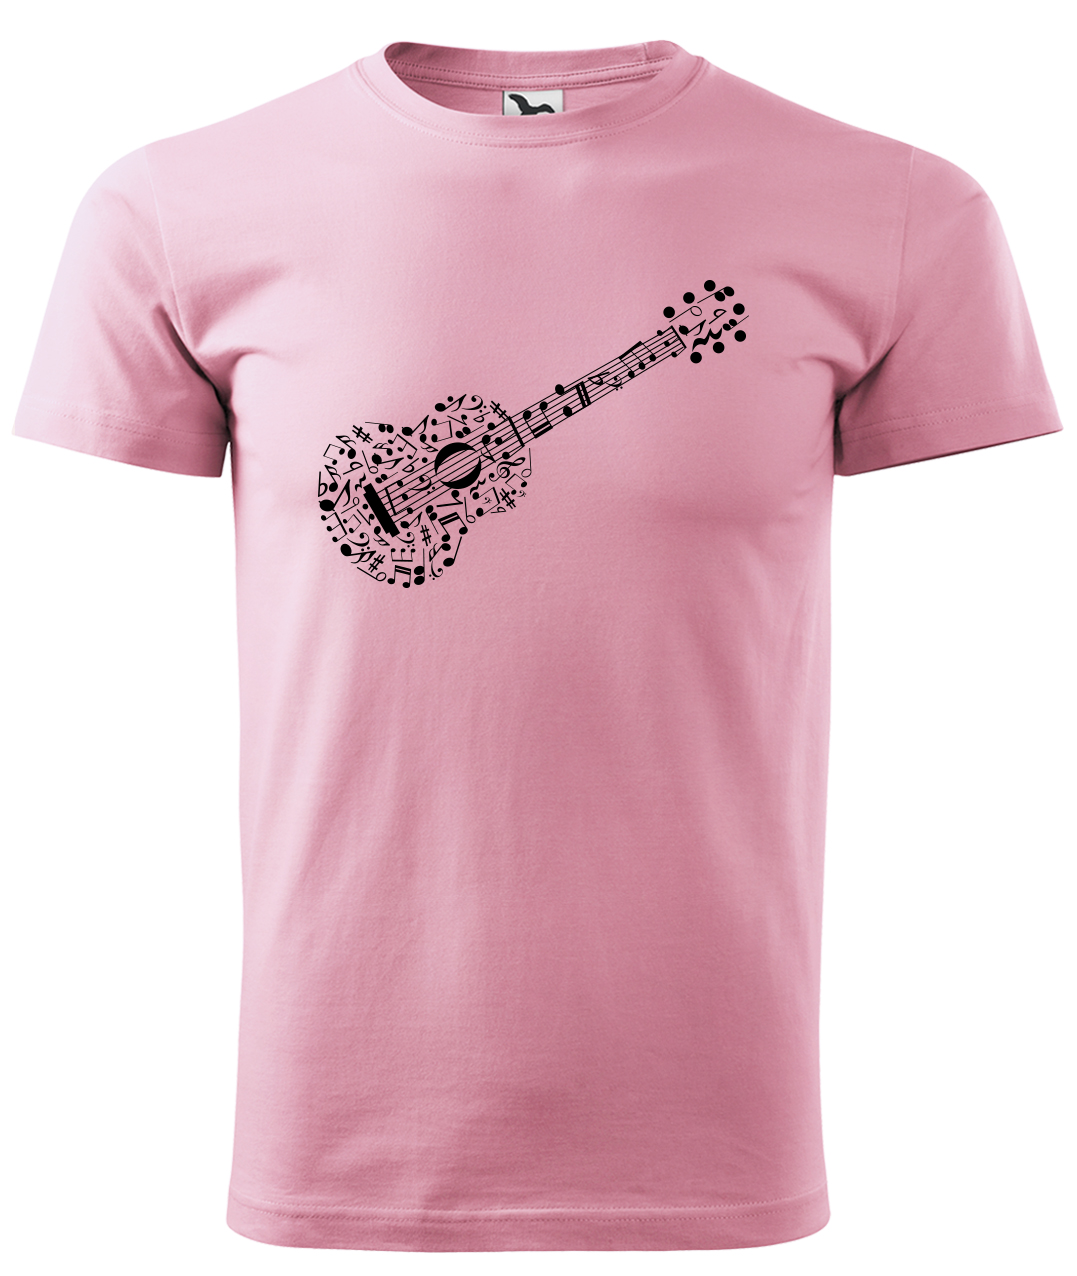 Dětské tričko s kytarou - Kytara z not Velikost: 4 roky / 110 cm, Barva: Růžová (30), Délka rukávu: Krátký rukáv